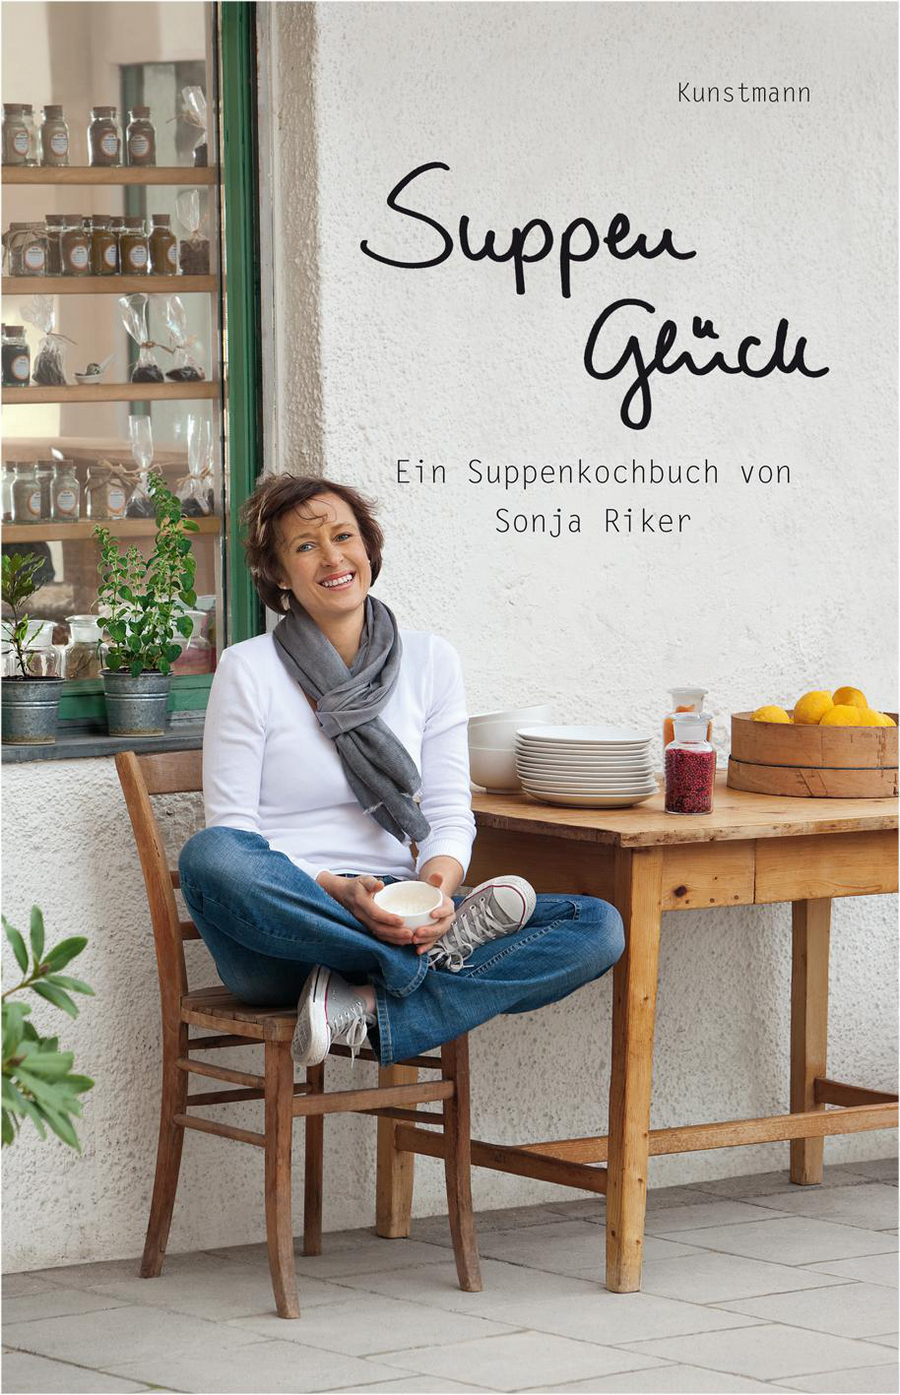 Sonja Riker, Suppenglück